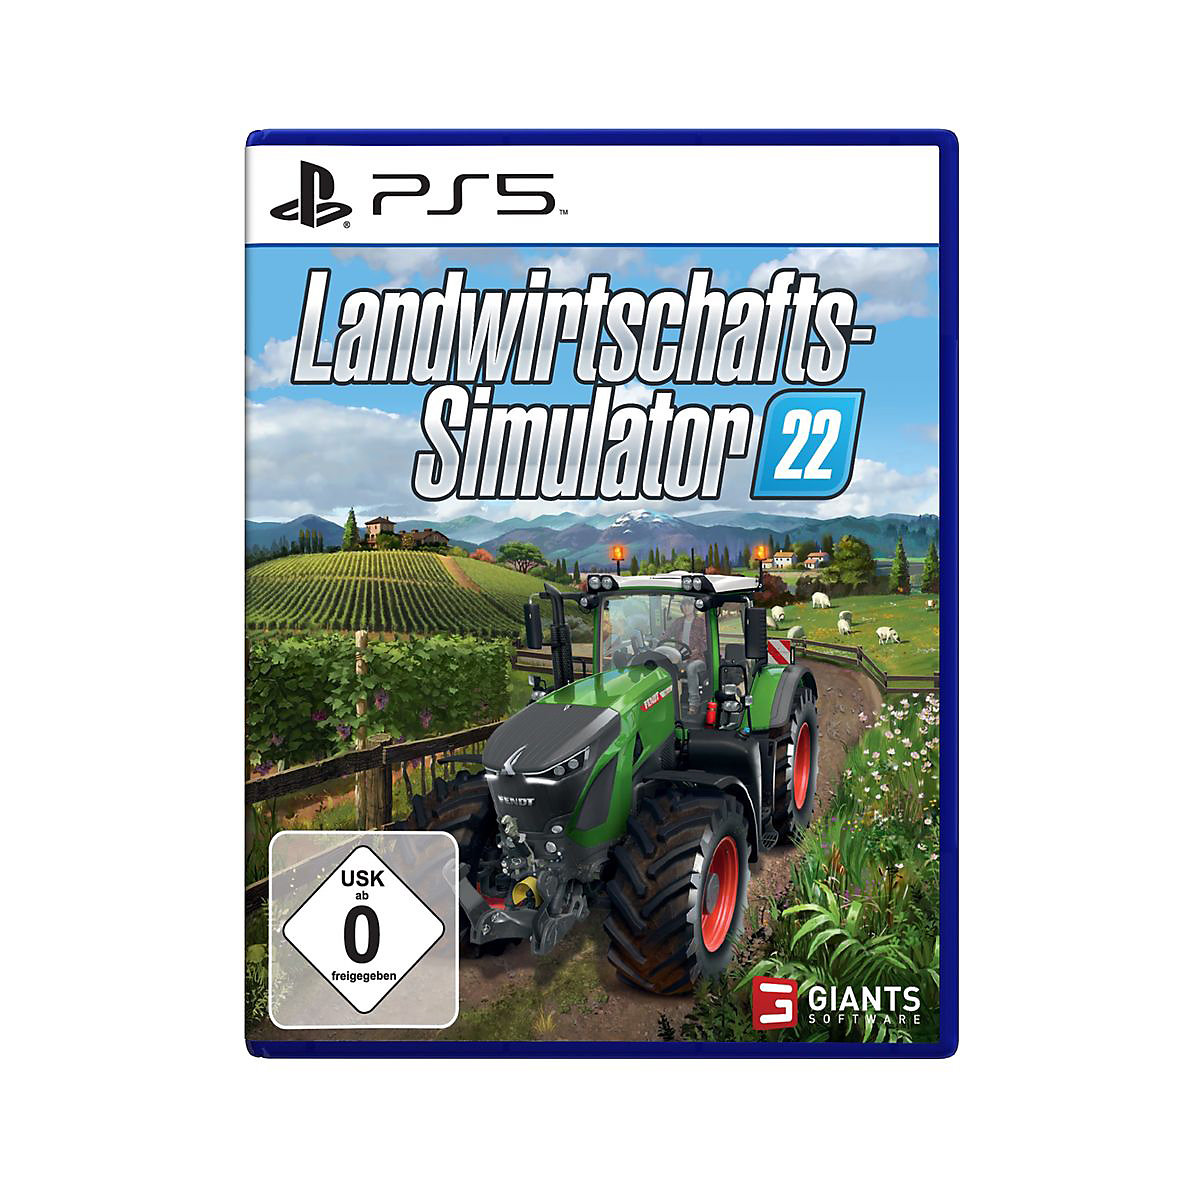 PS5 Landwirtschafts-Simulator 22